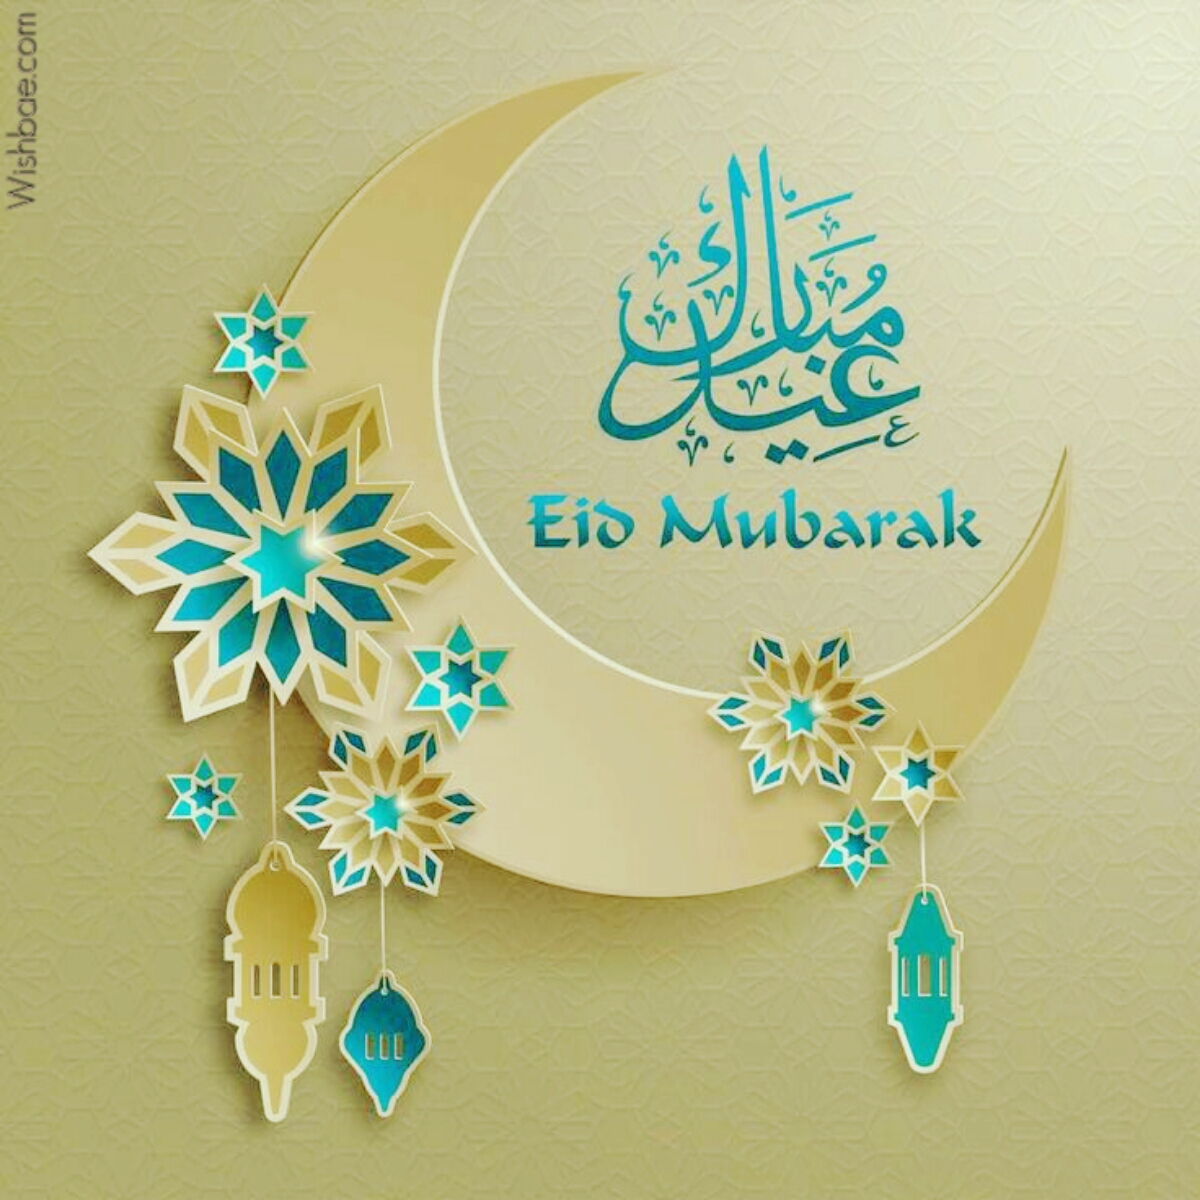 Happy Eid Mubarak 2018